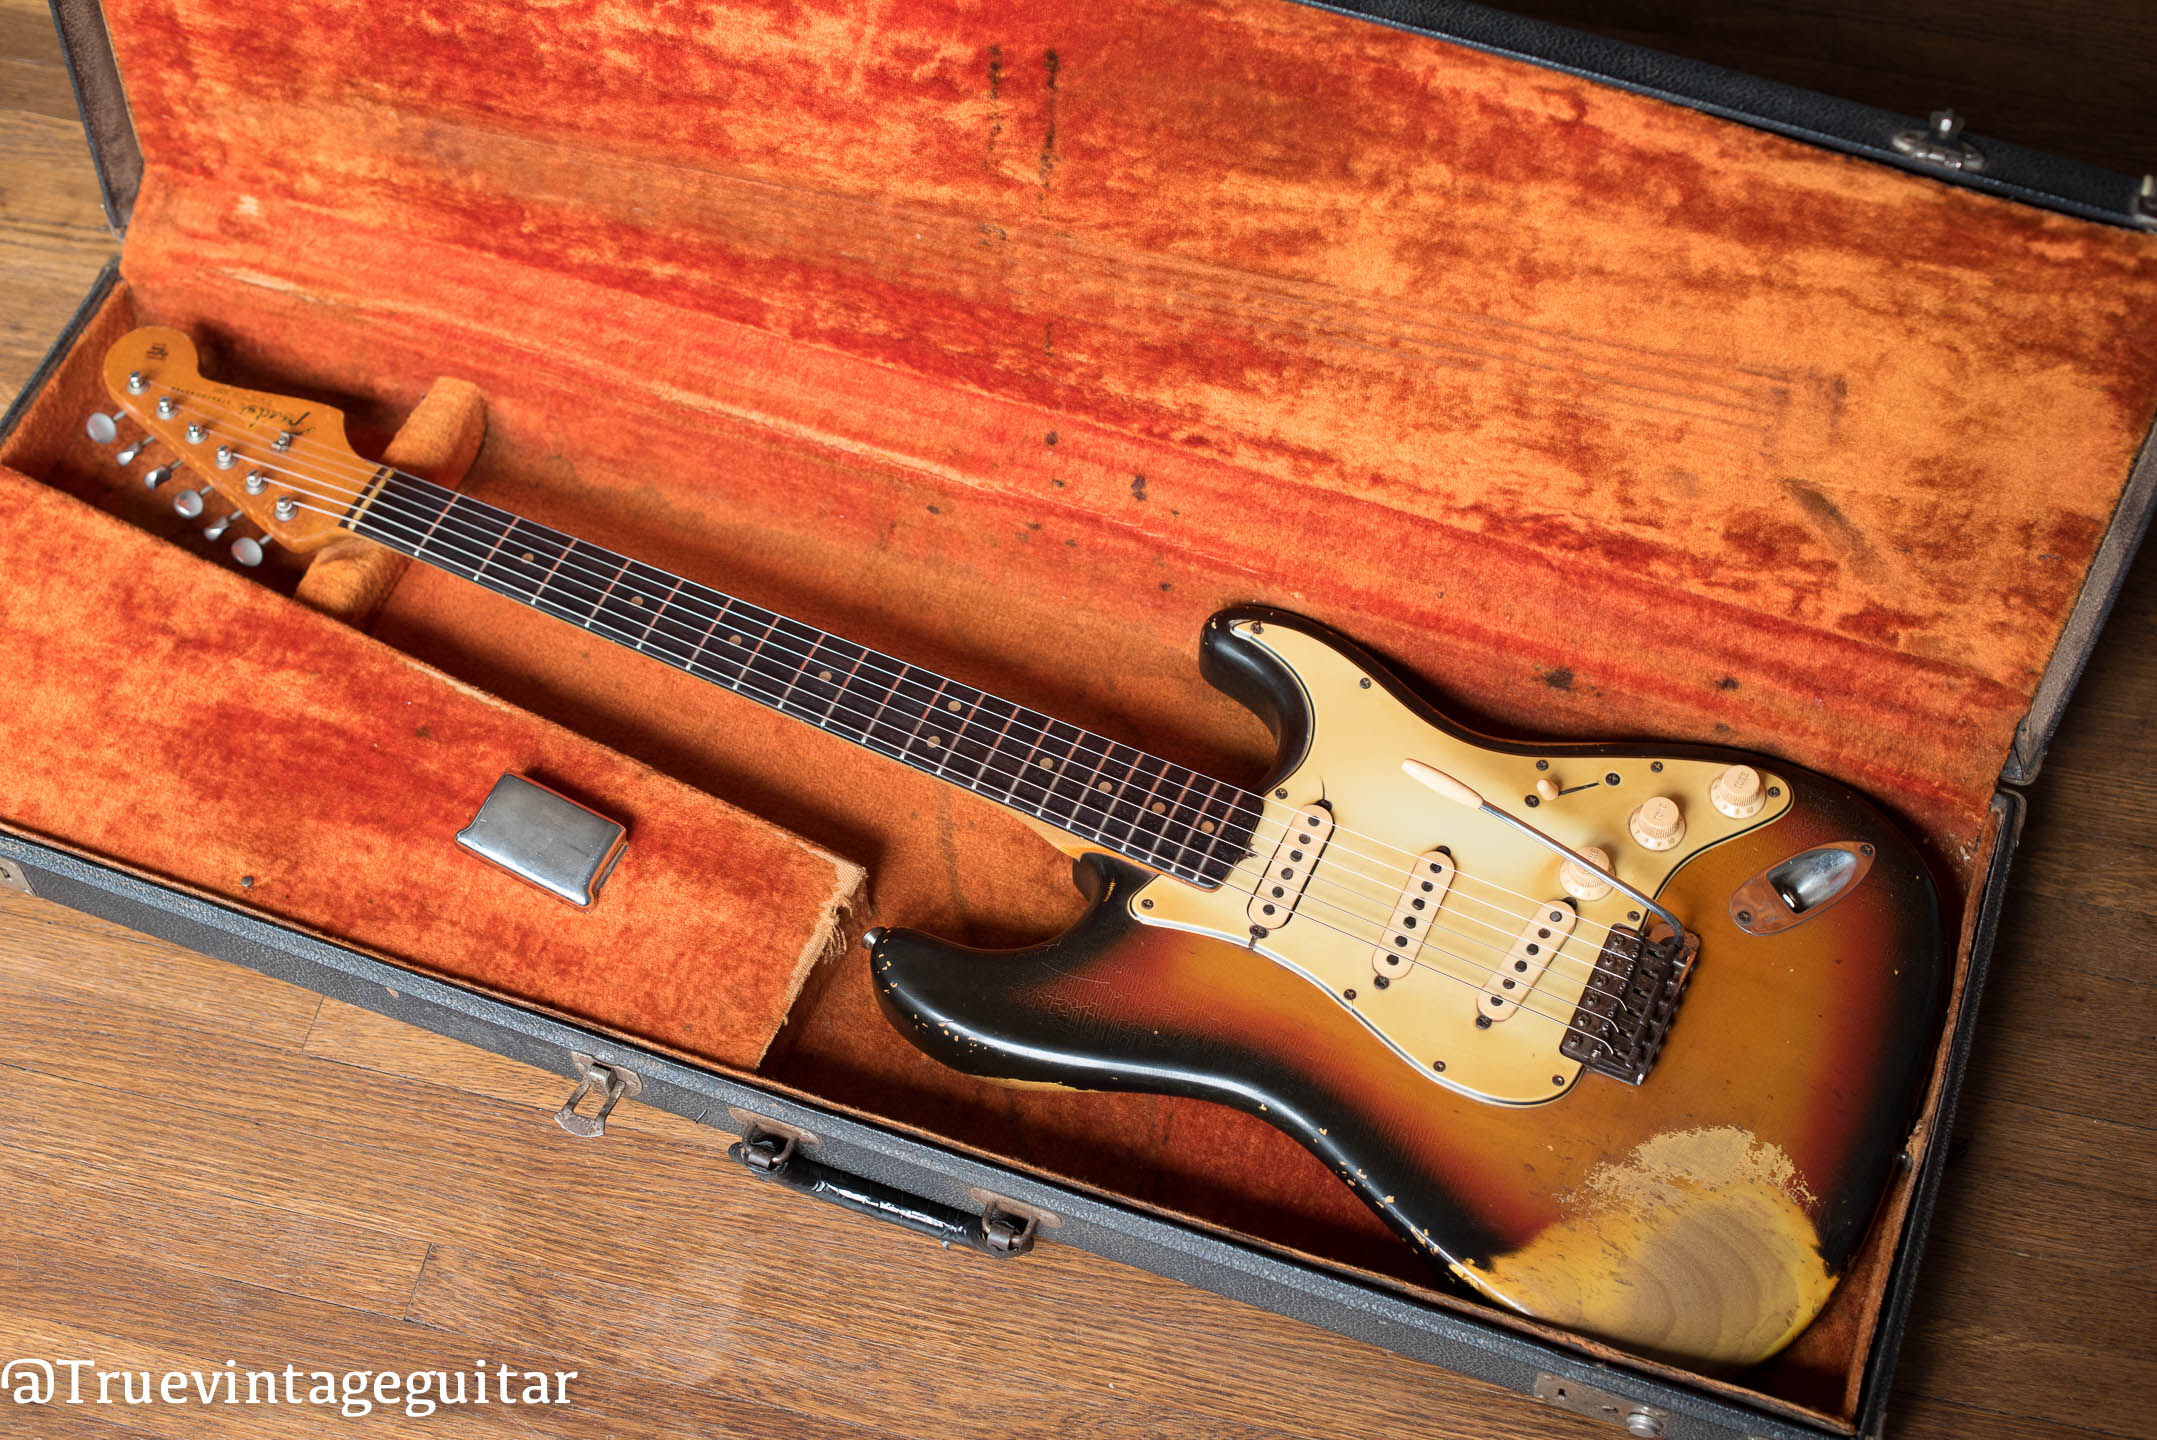 Vintage 1964 Fender Stratocaster guitar